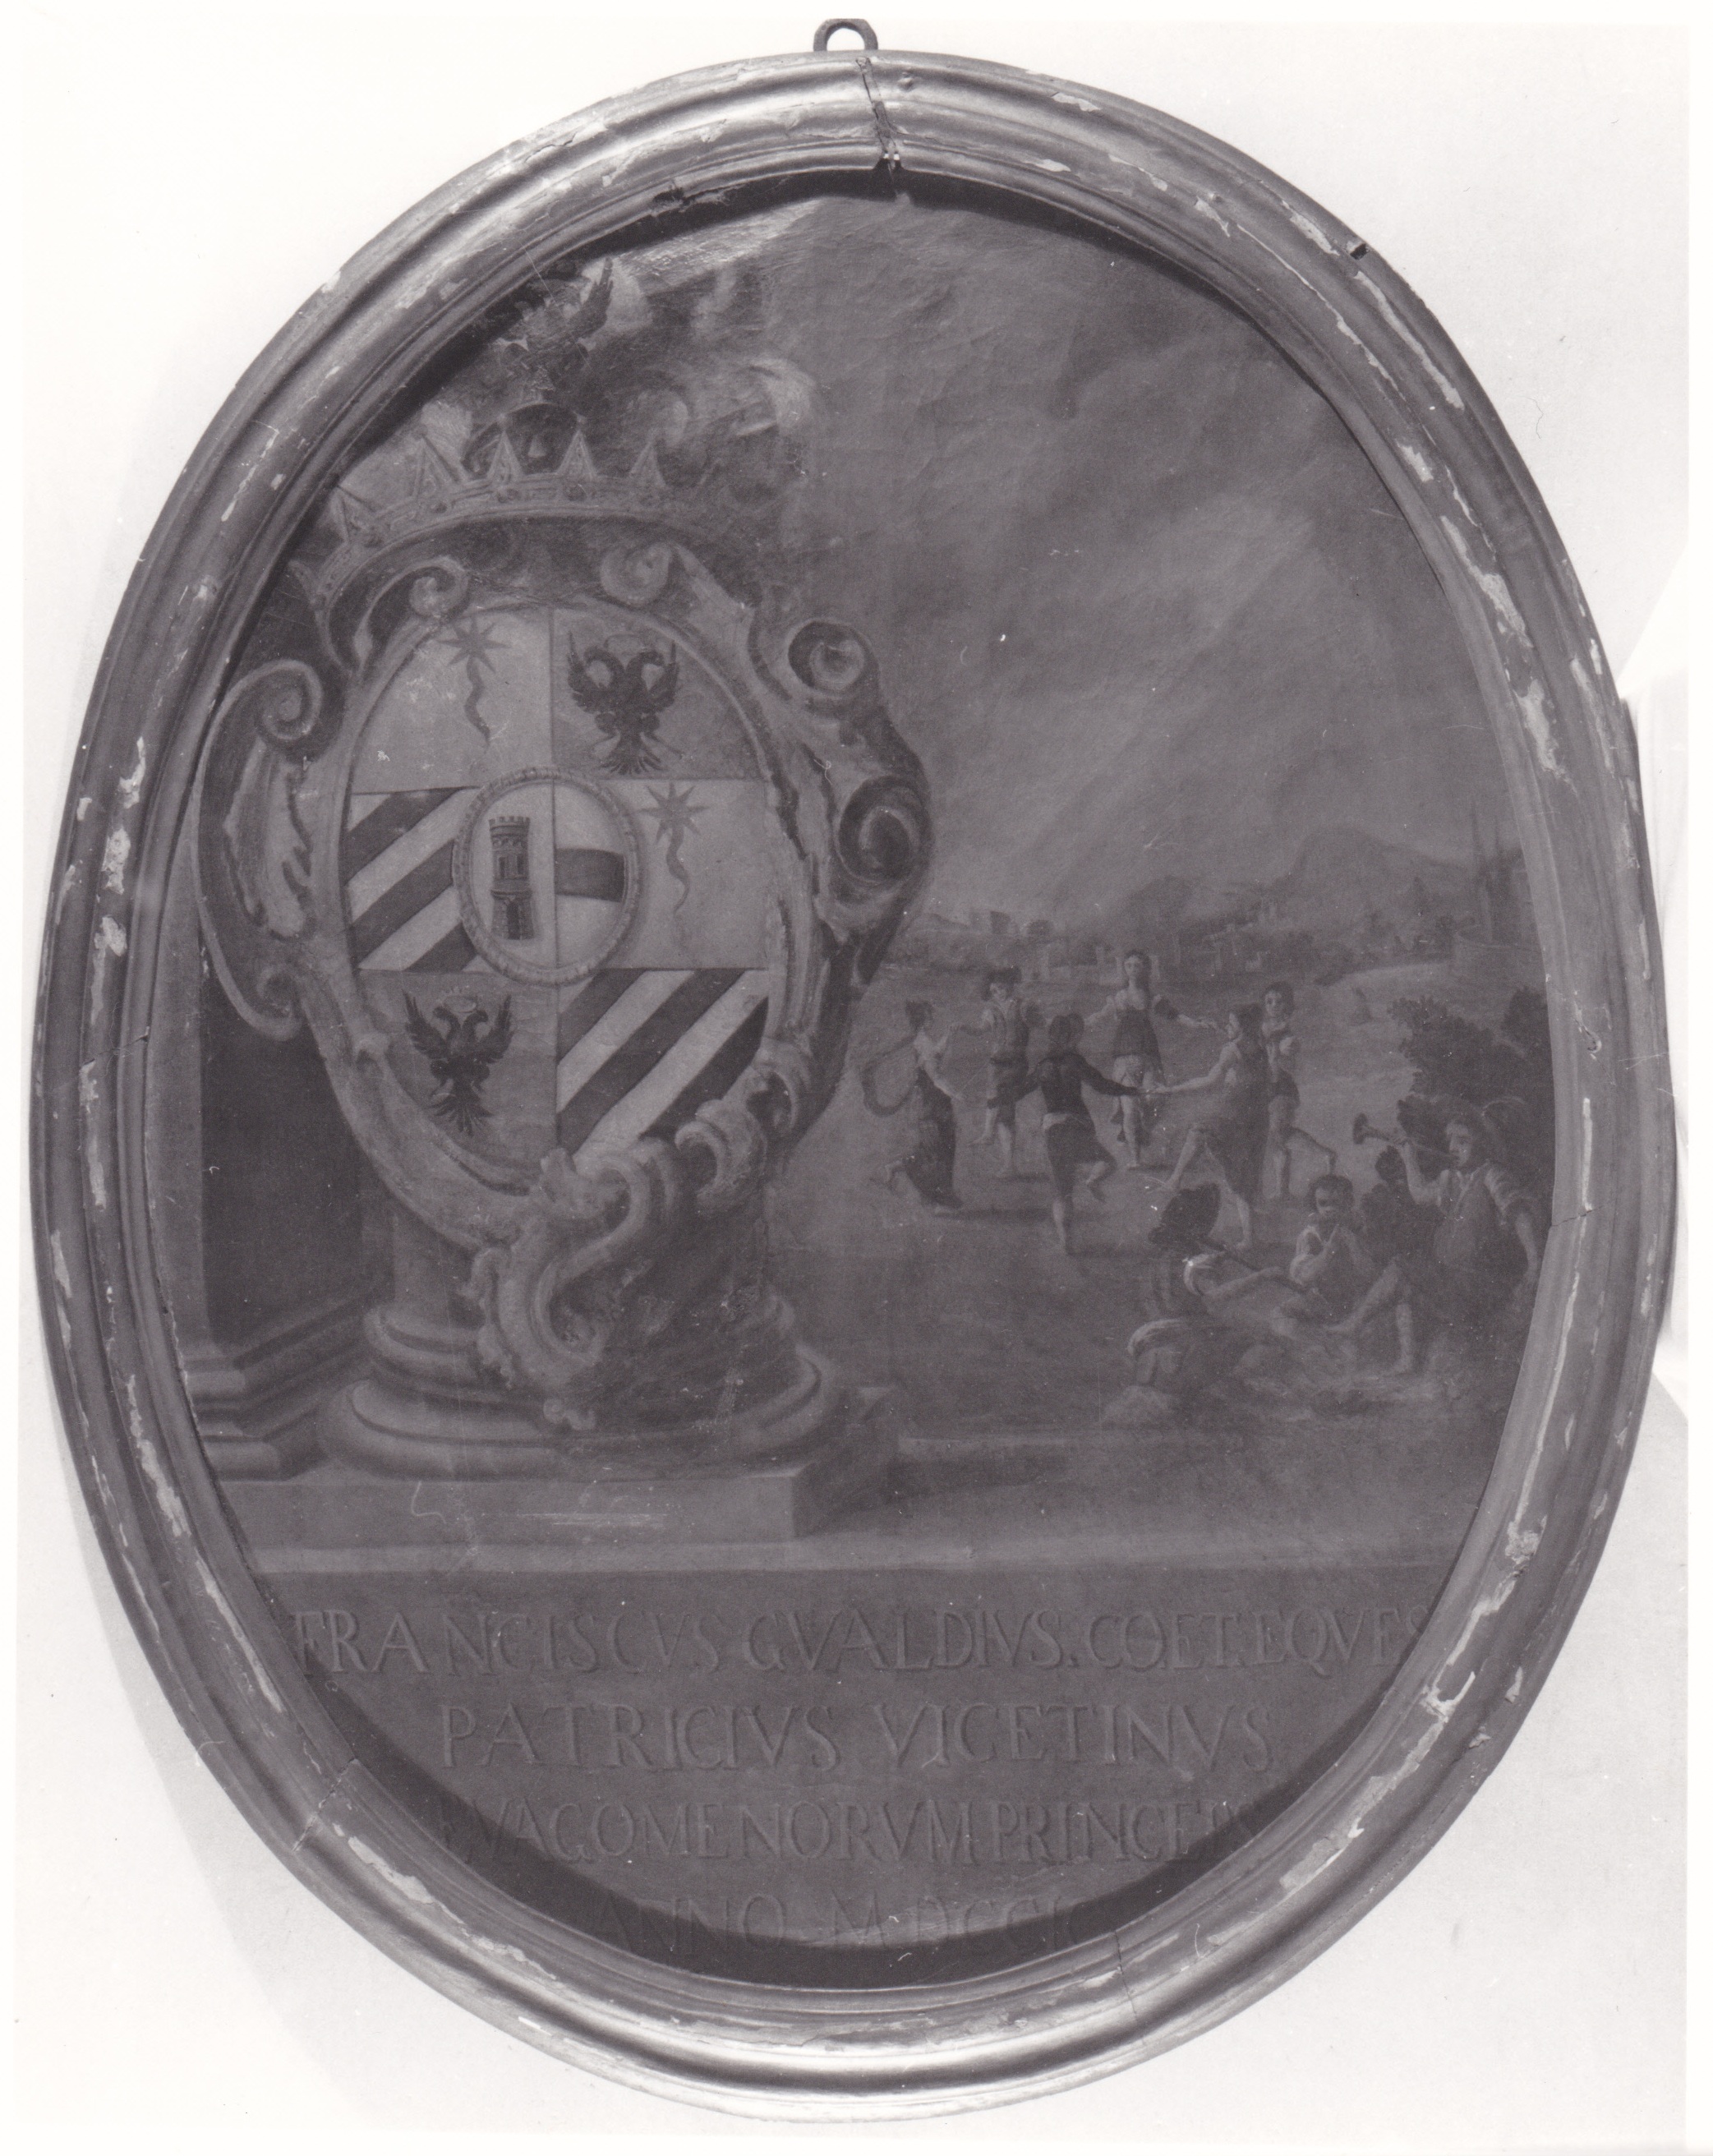 Stemma della famiglia Gualdo, Allegoria dell'estate, stemma nobiliare, allegoria (dipinto) - ambito vicentino (XVIII)